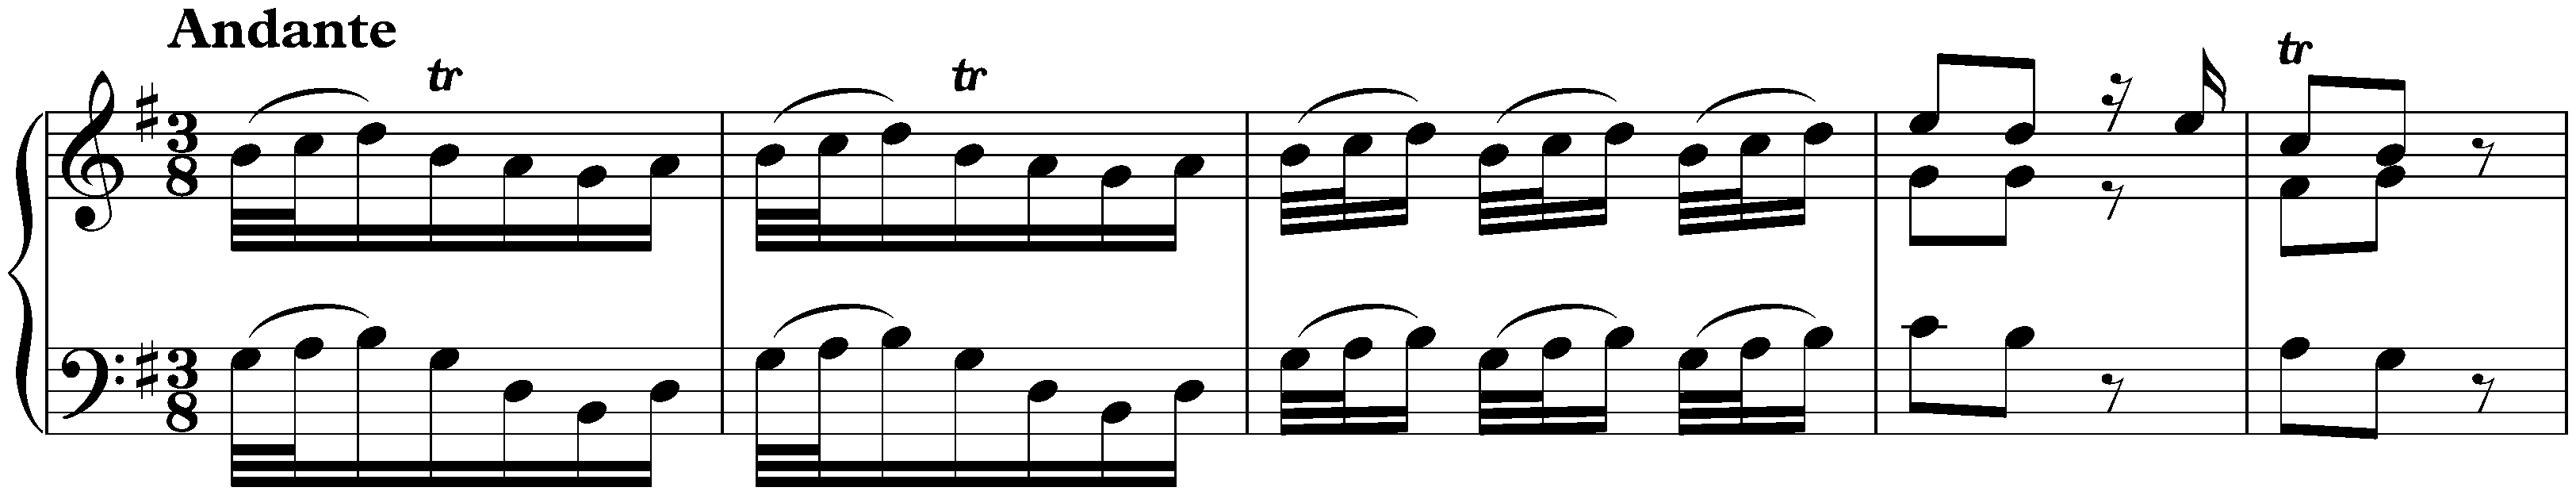 Concerto in G major, HWV 487; 2. Andante